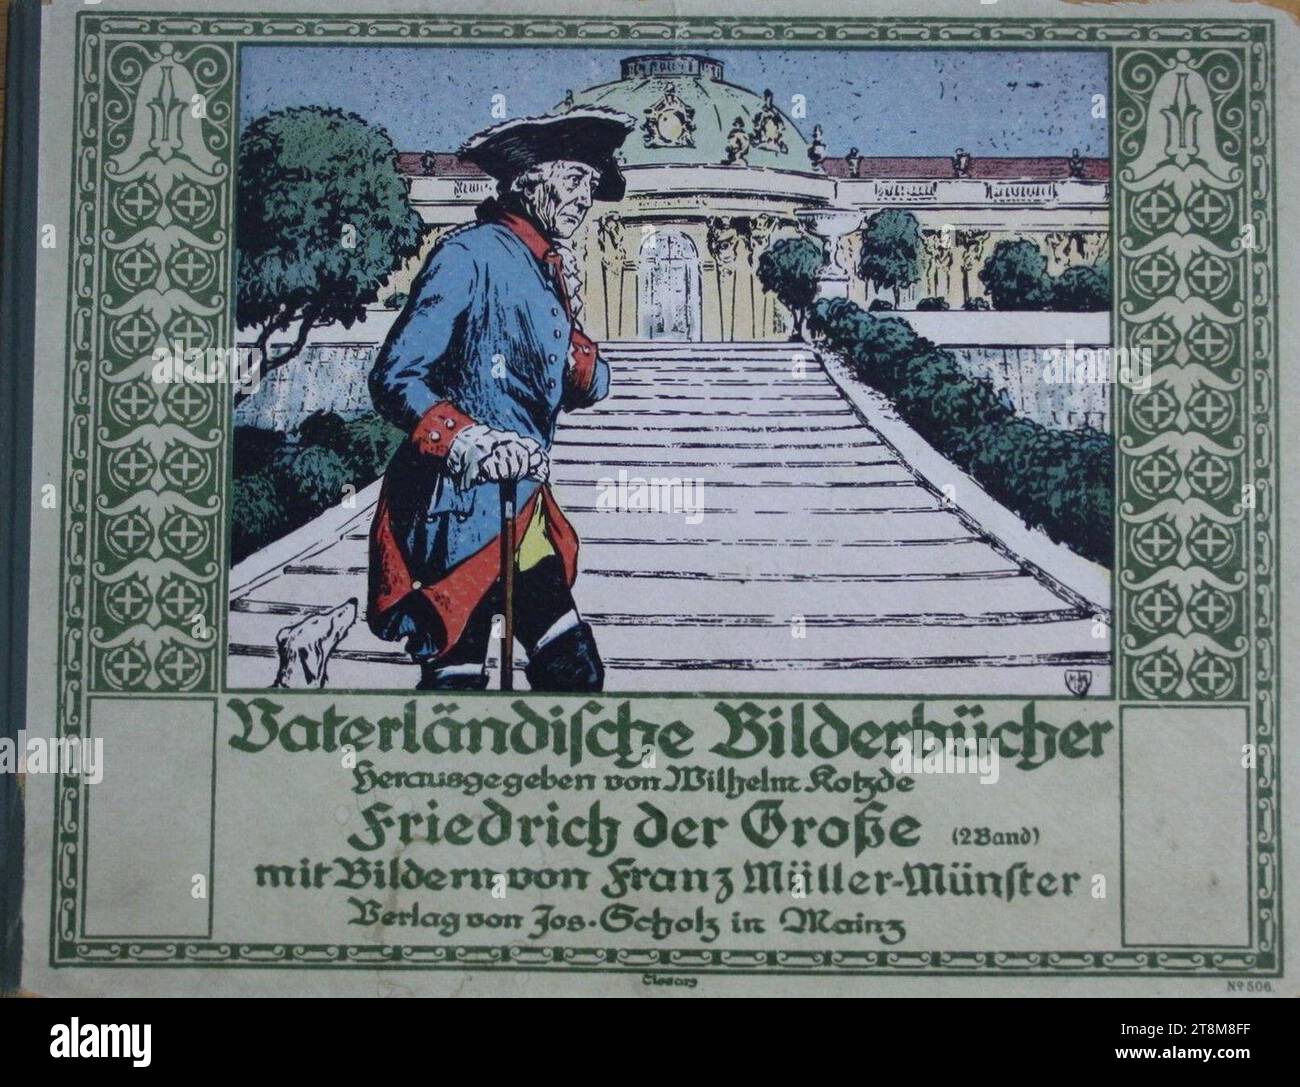 Vaterländische Bilderbücher - Friedrich der Große - illustriert von Franz Müller-Münster. Foto Stock